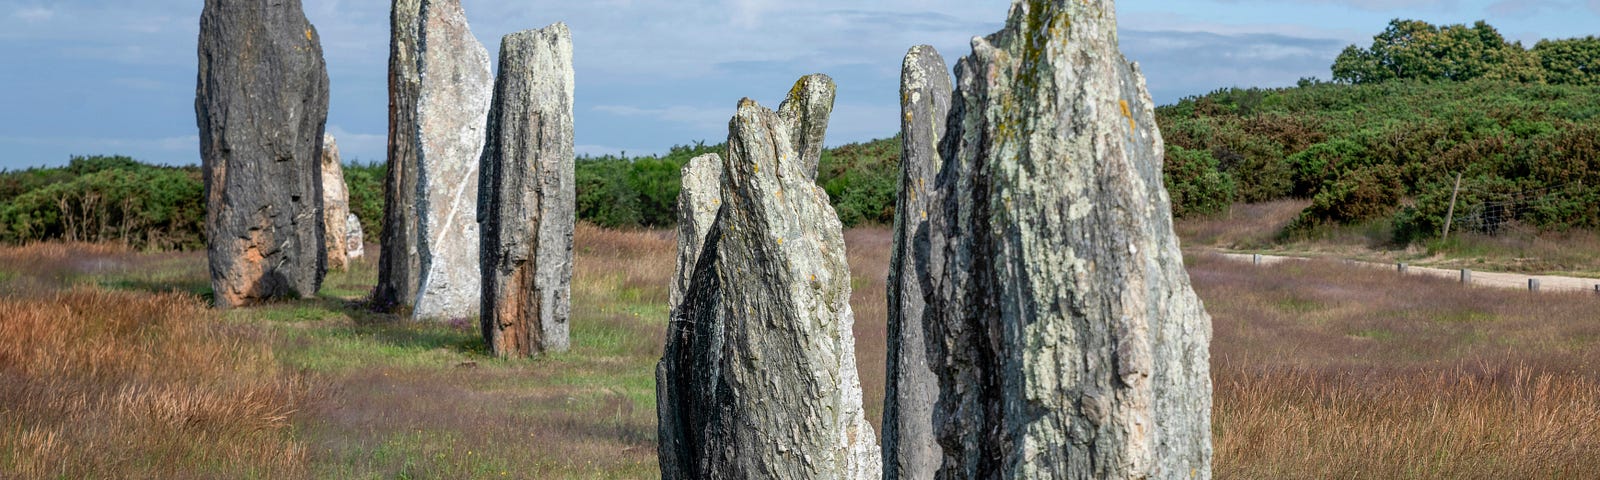 Six Standing Stones in an open field